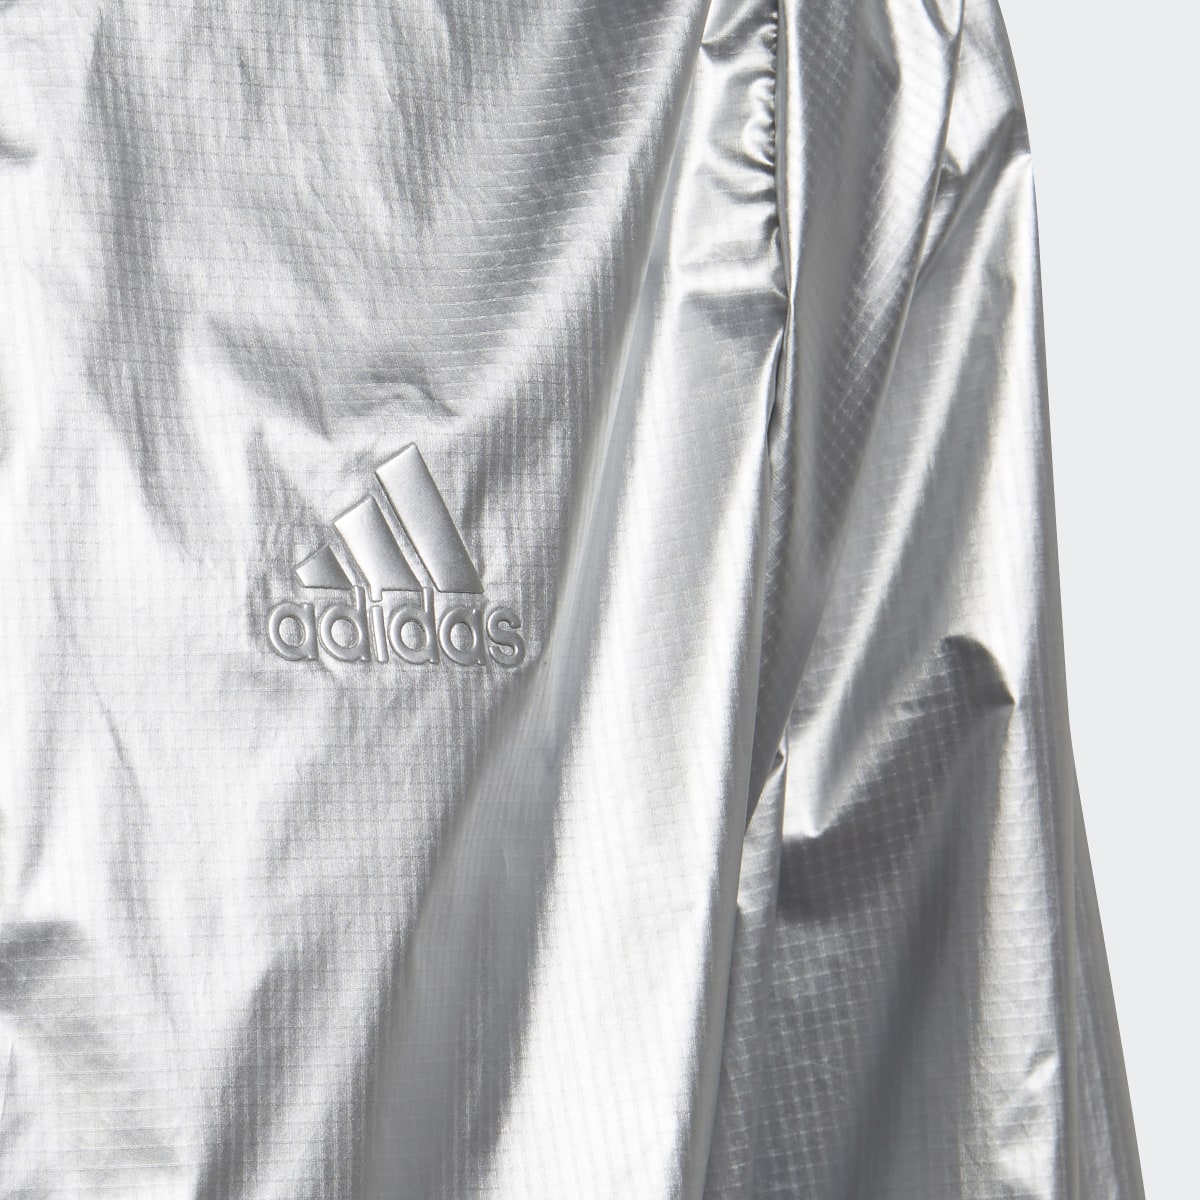 Adidas Dance Metallic Woven Track Jacket. 4